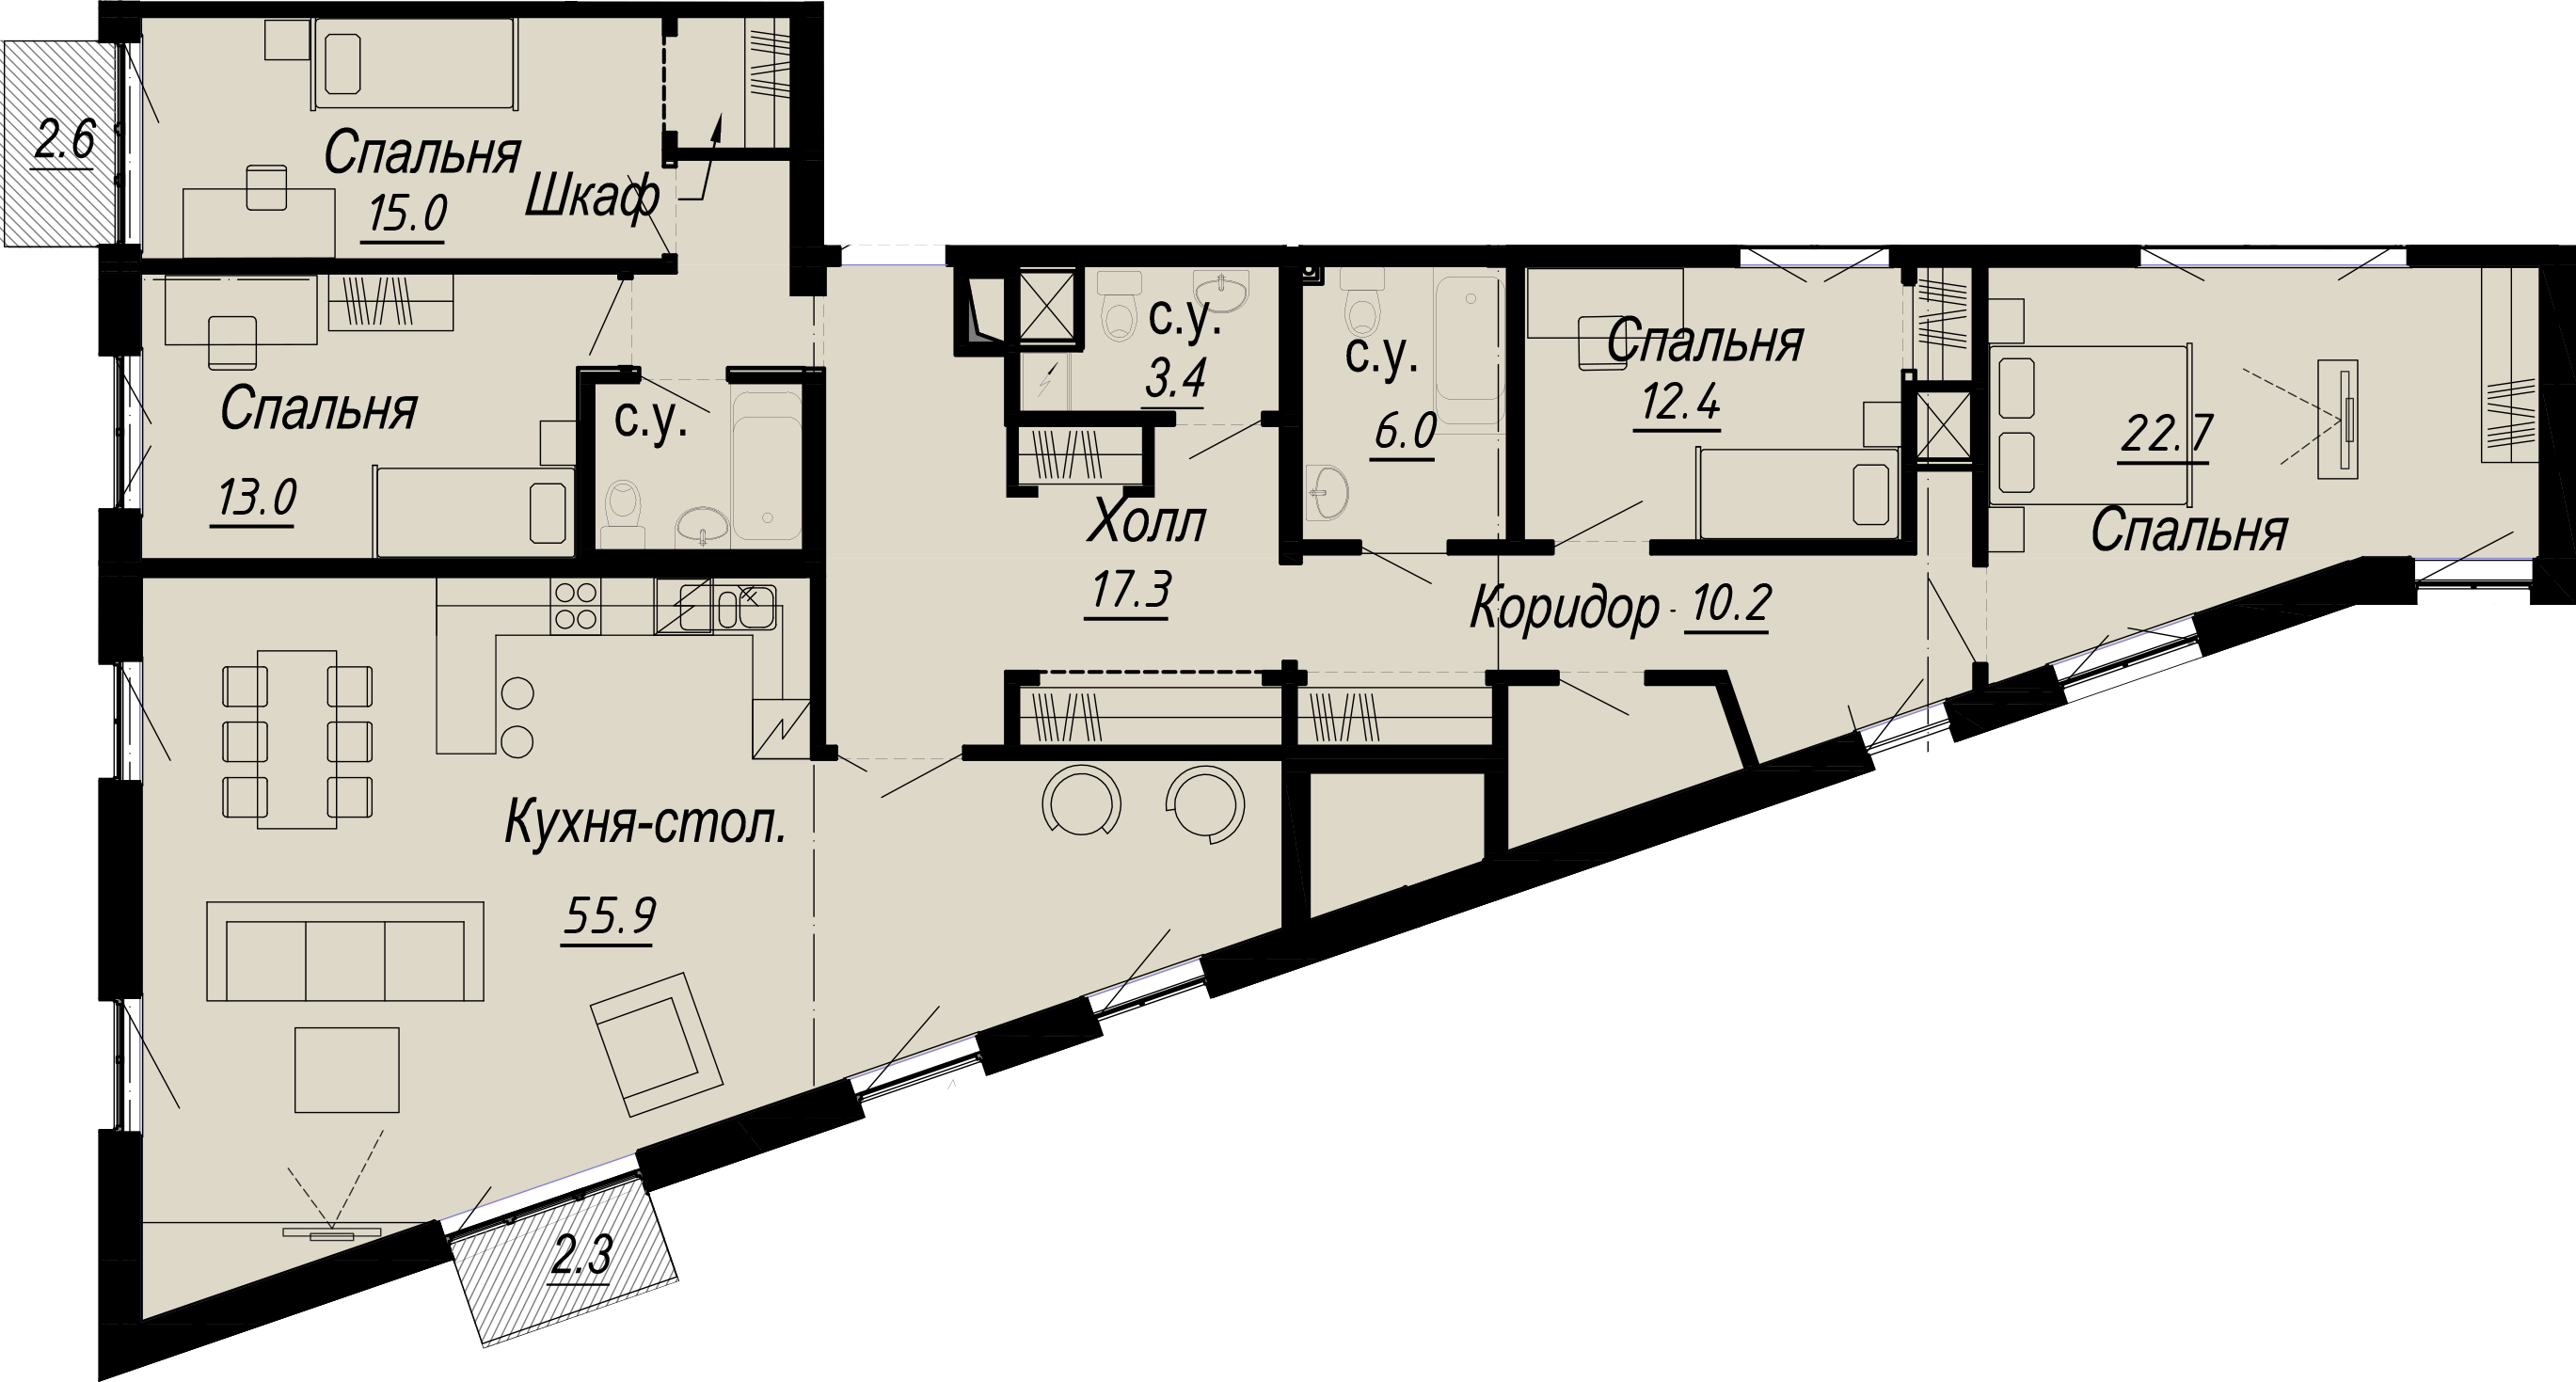 4-комнатная квартира  №31-6 в Meltzer Hall: 168.62 м², этаж 6 - купить в Санкт-Петербурге